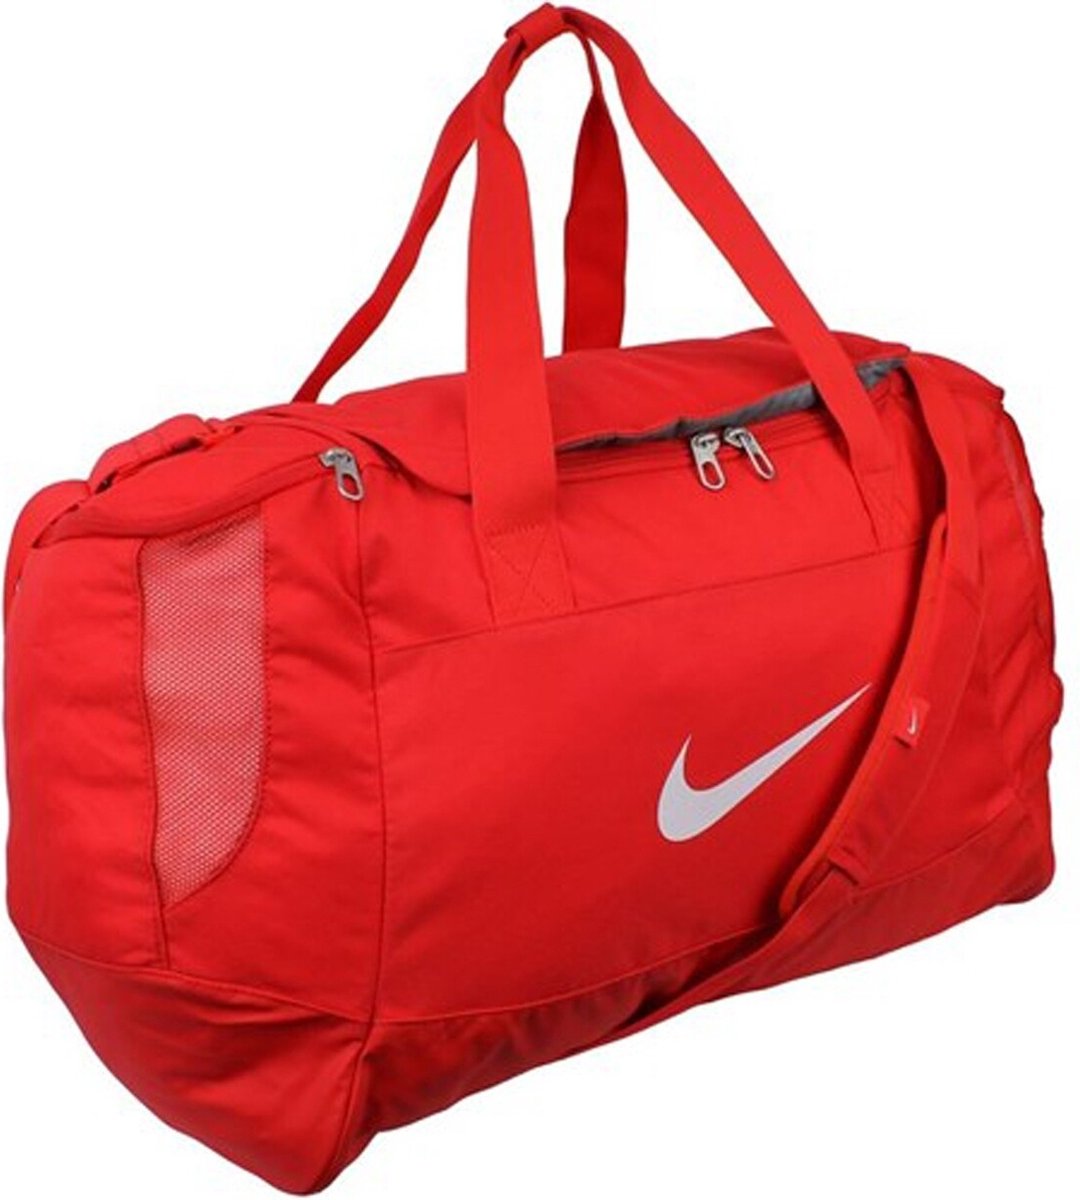 Beg Afleiding En team Nike - Club Team Duffel Medium - Rode Sporttas - One Size - Rood | bol.com